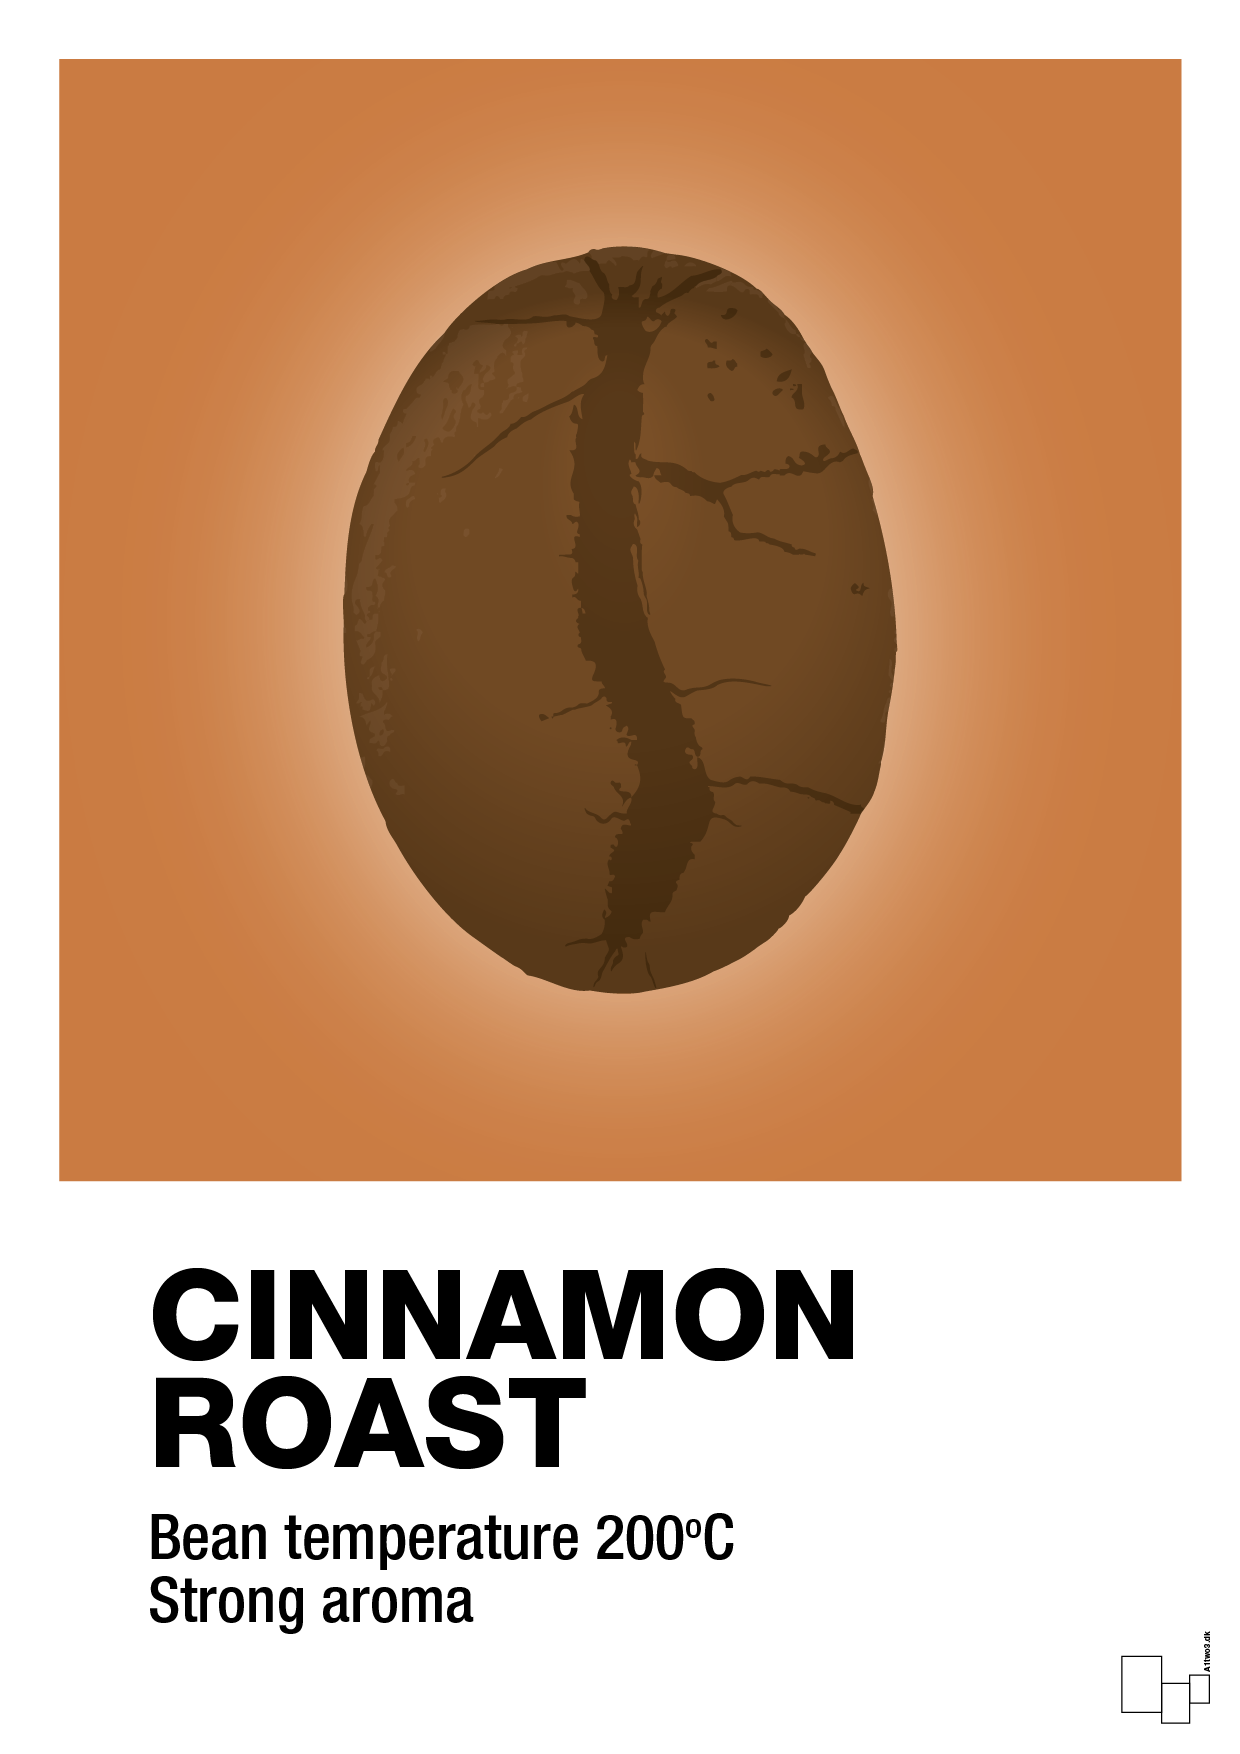 cinnamom roast - Plakat med Mad & Drikke i Rumba Orange